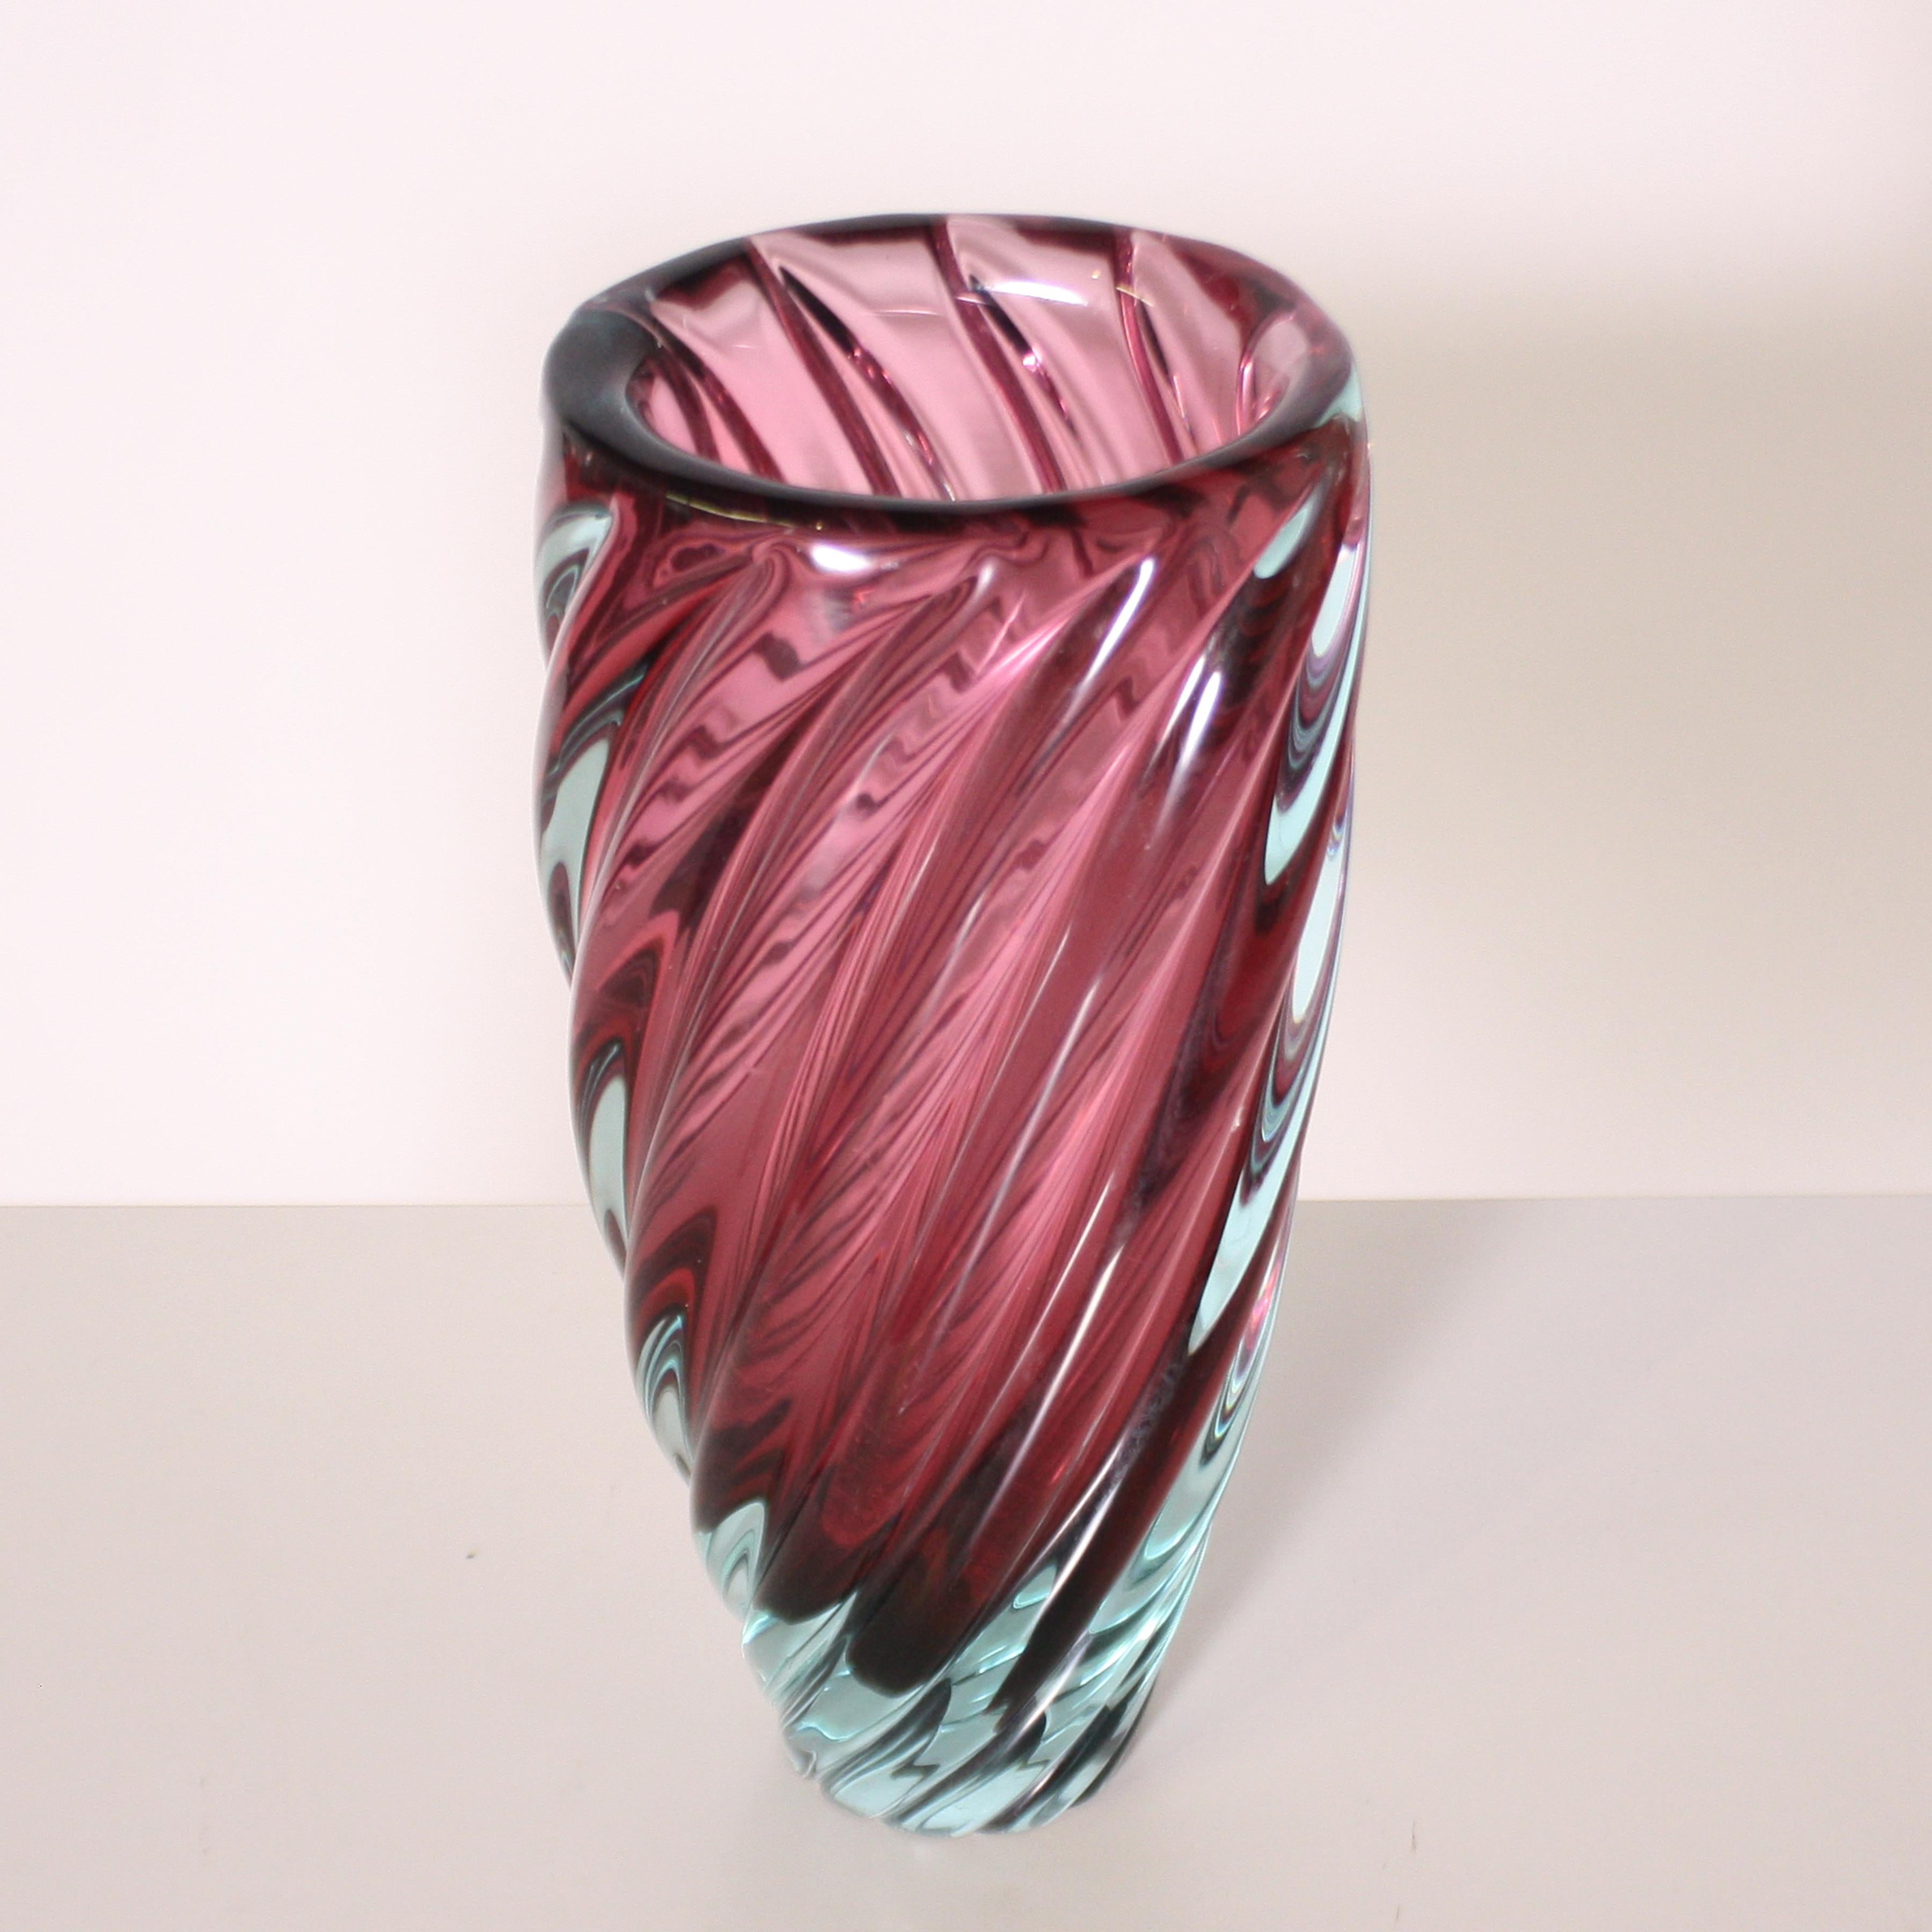 Purple and blue Murano glass vase, circa 1950.